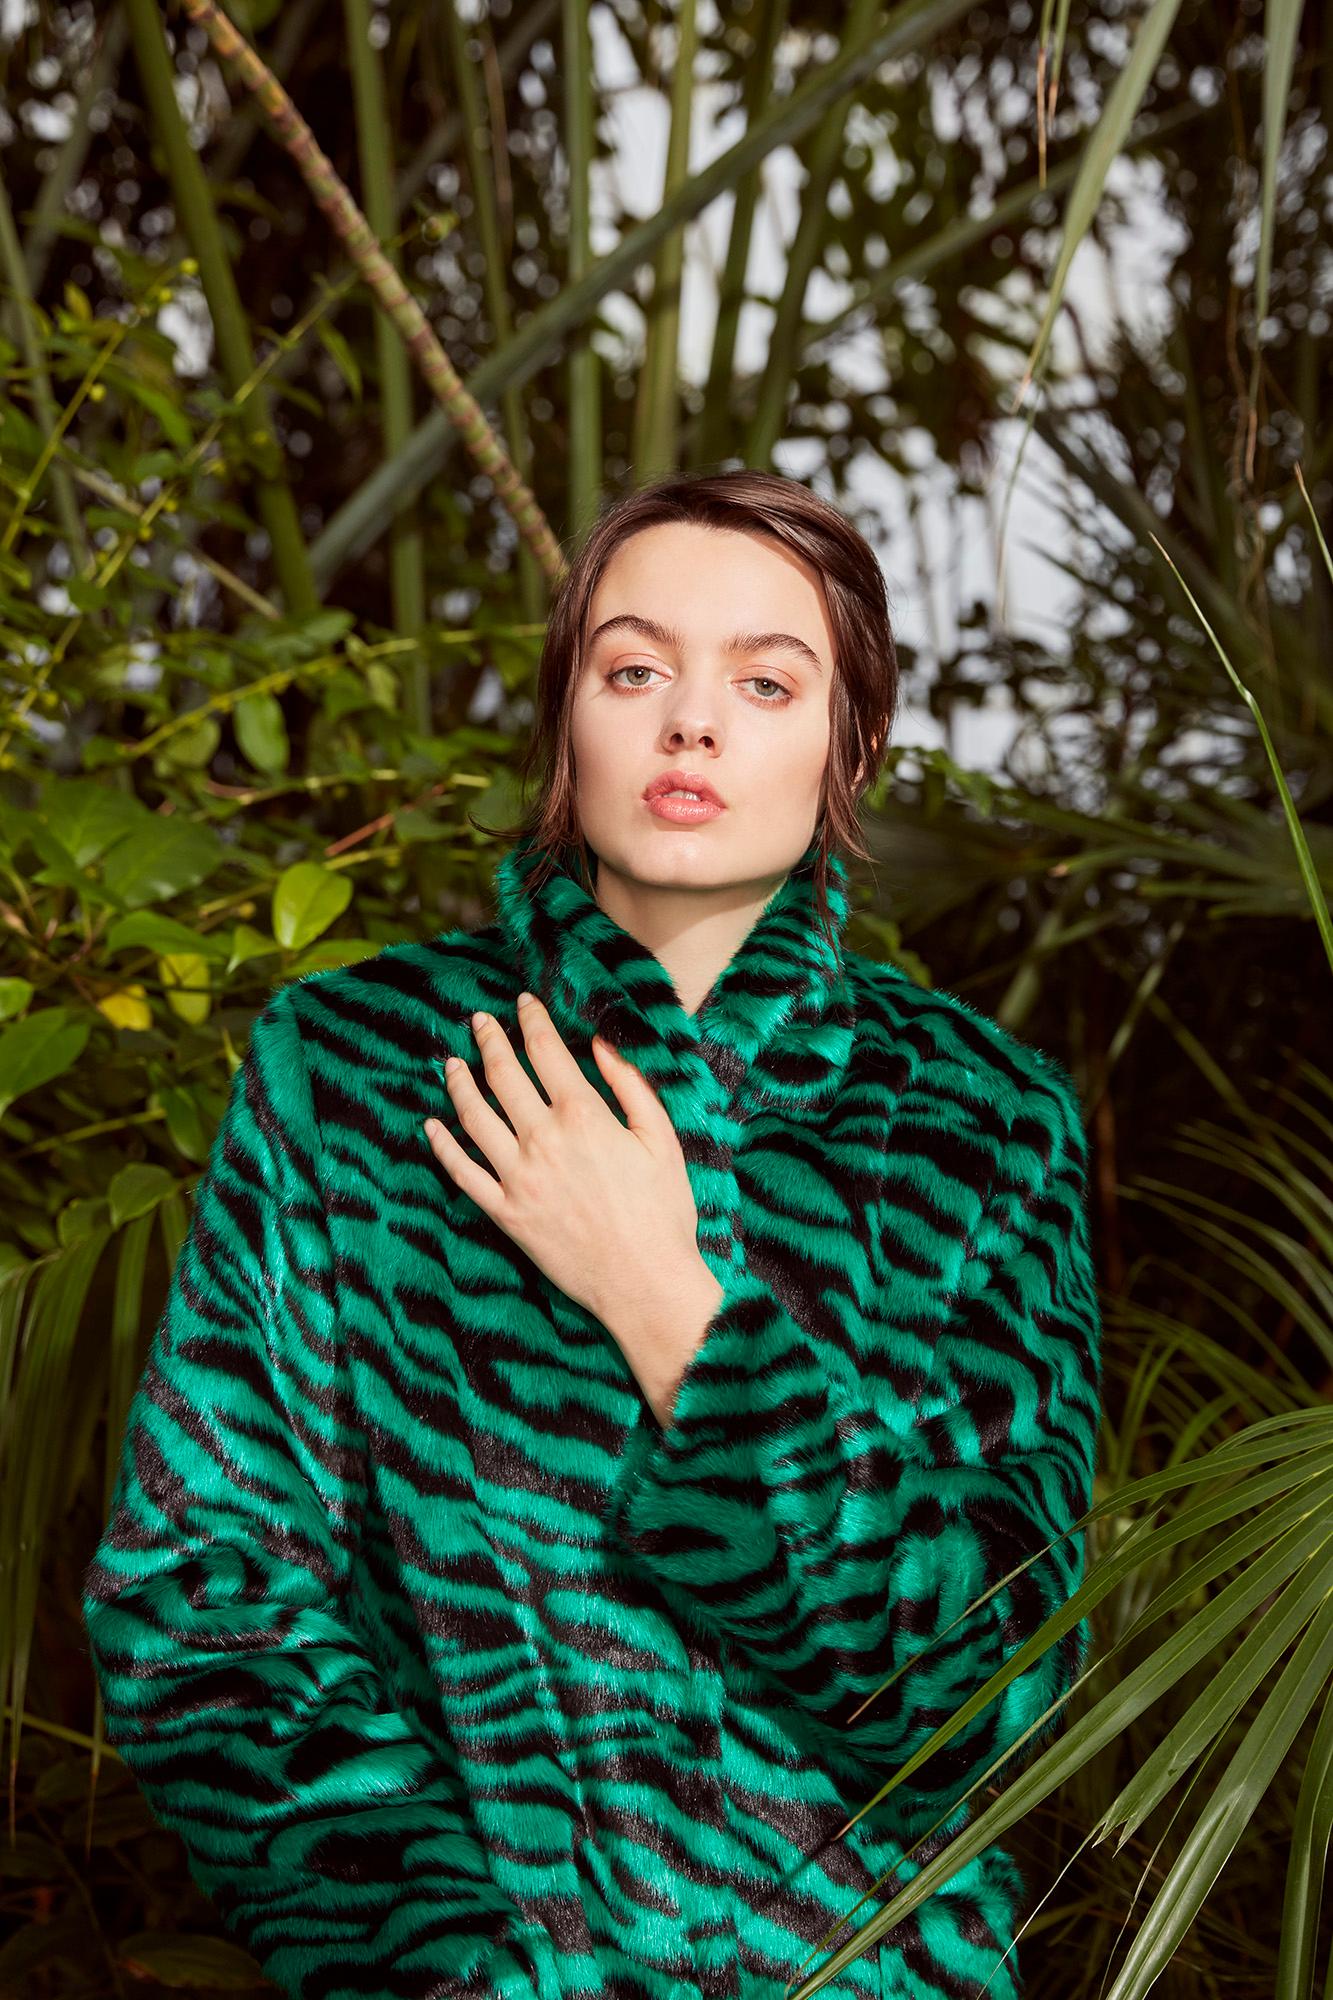 Verheyen London Esmeralda Faux Fur Coat in Emerald Green Zebra Print size uk 12 For Sale 3